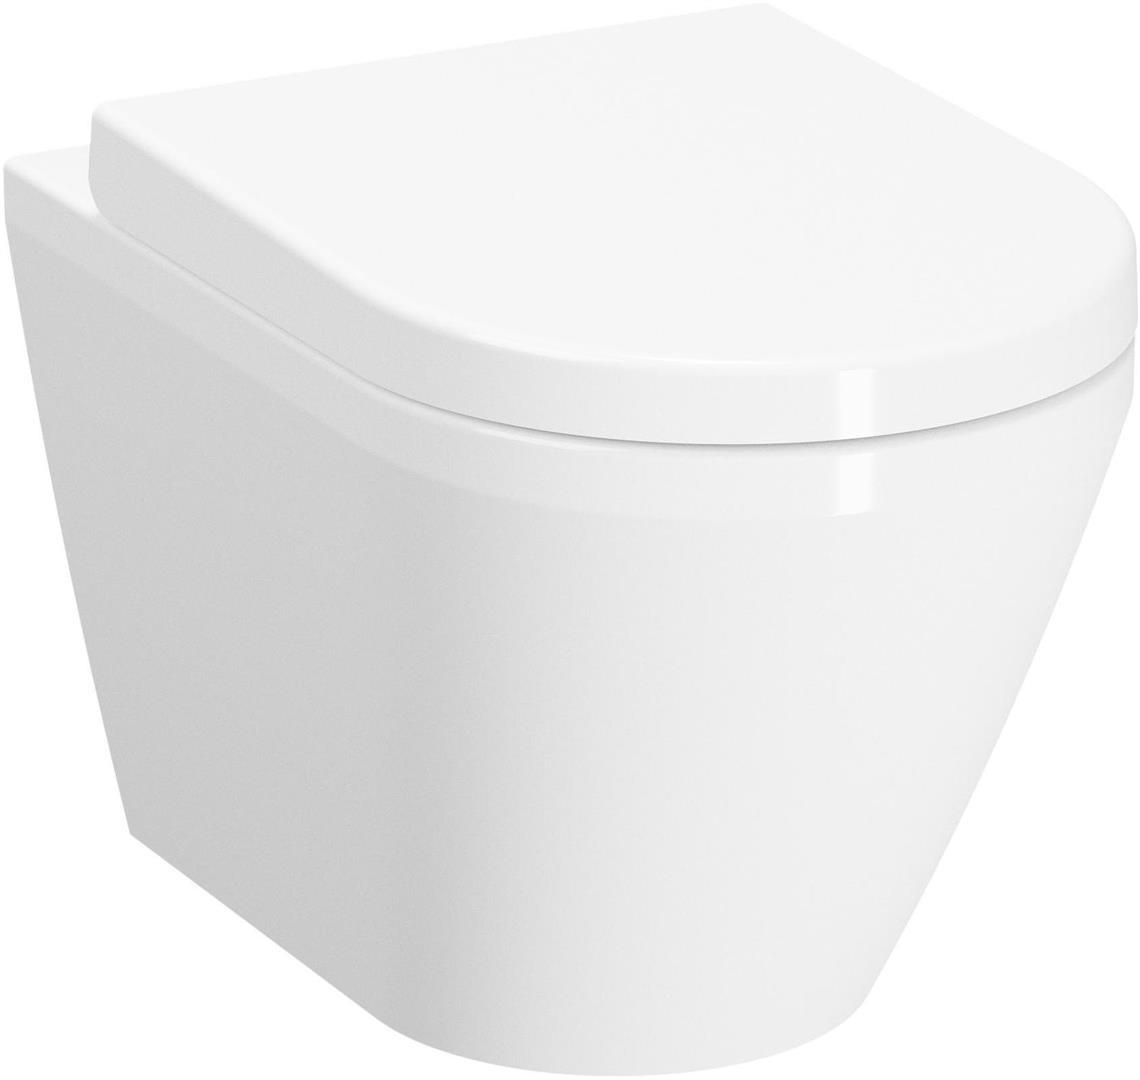 DIANA S100 Tiefspül spülrandloses Wand WC + Softclose WC-Sitz + Schallschutz Set